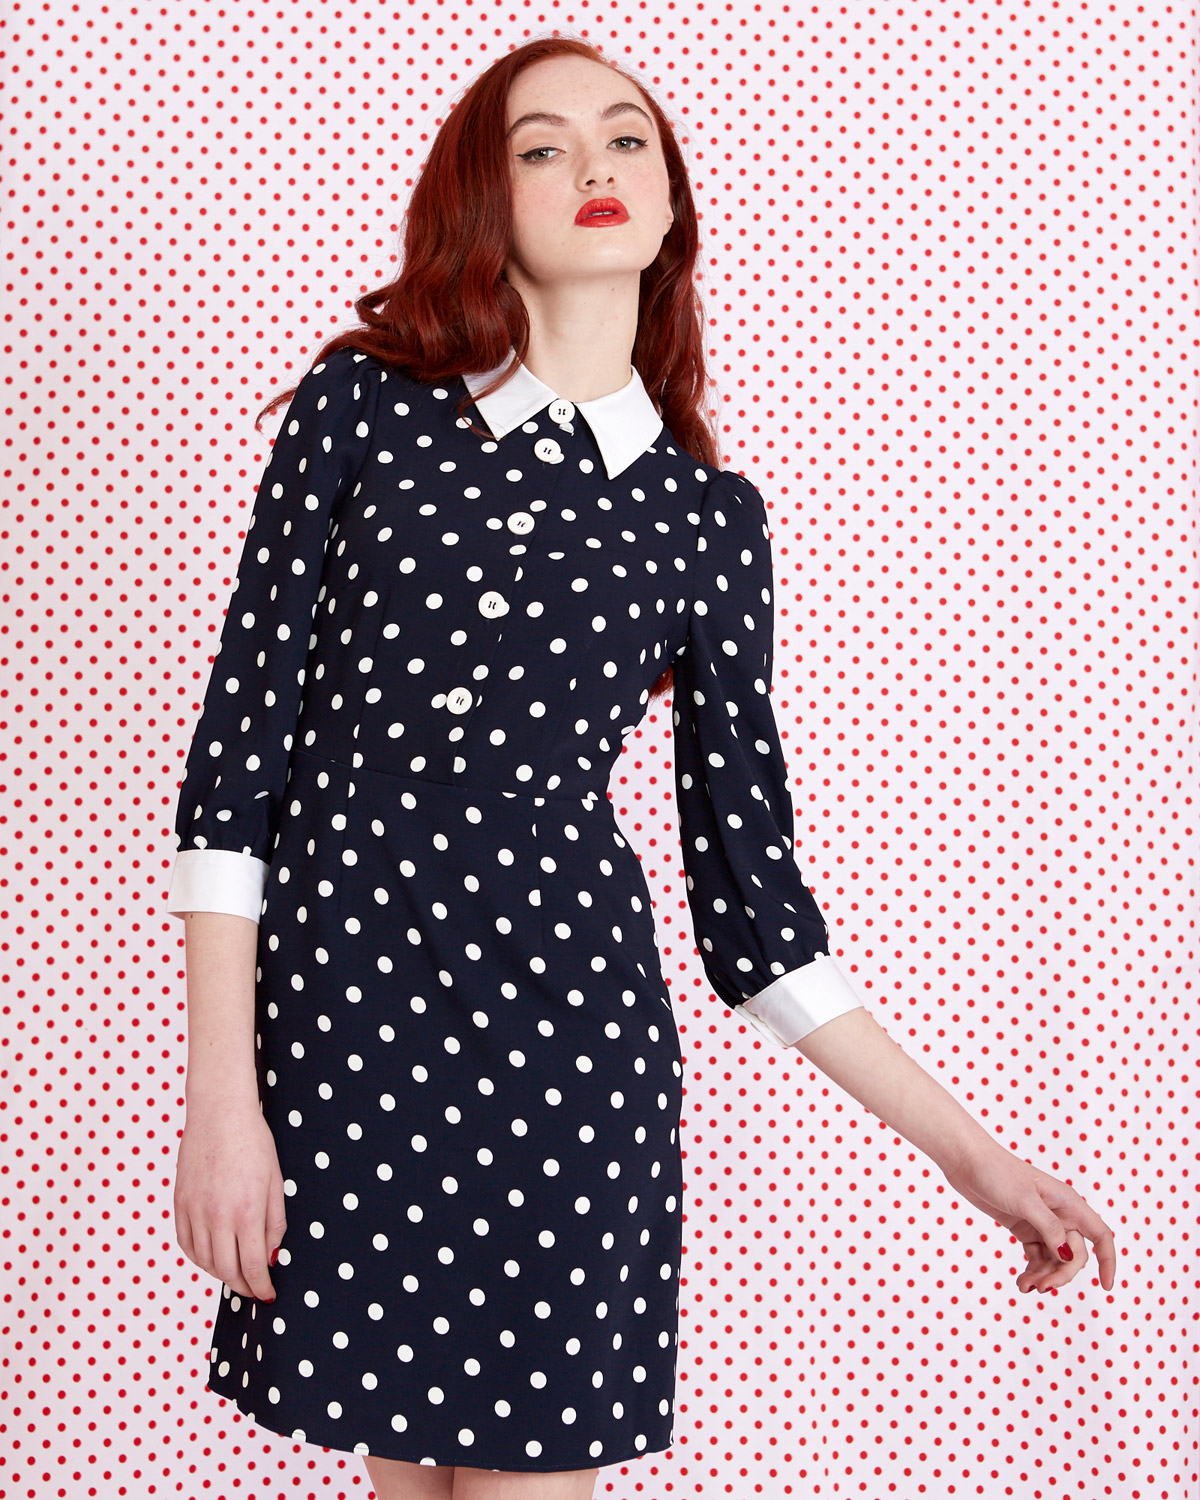 dunnes polka dot dress